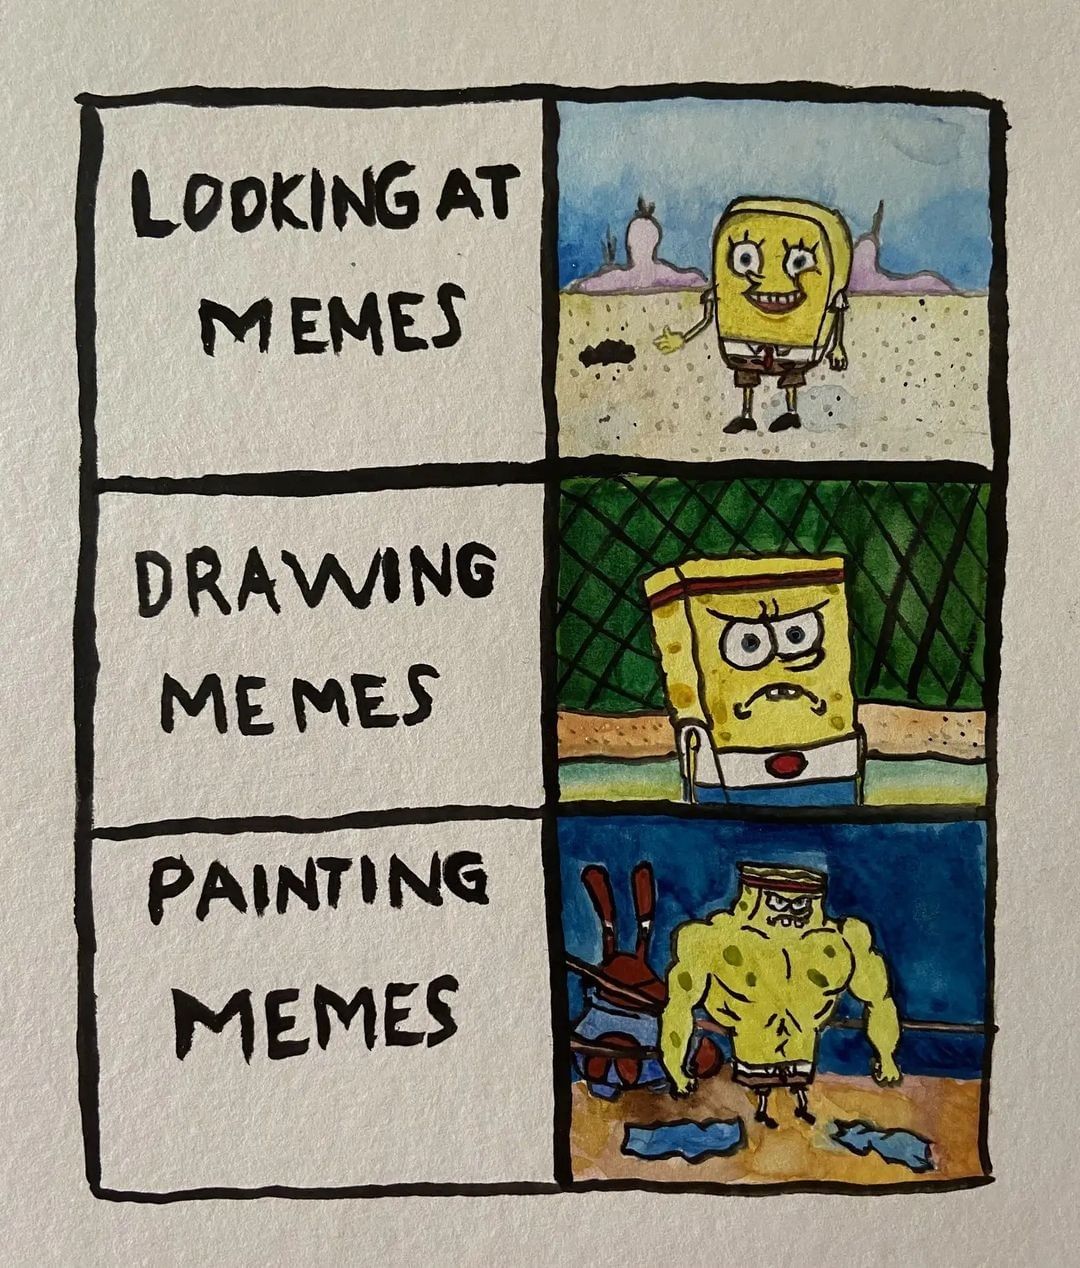 Looking at memes. Drawing memes. Painting memes.